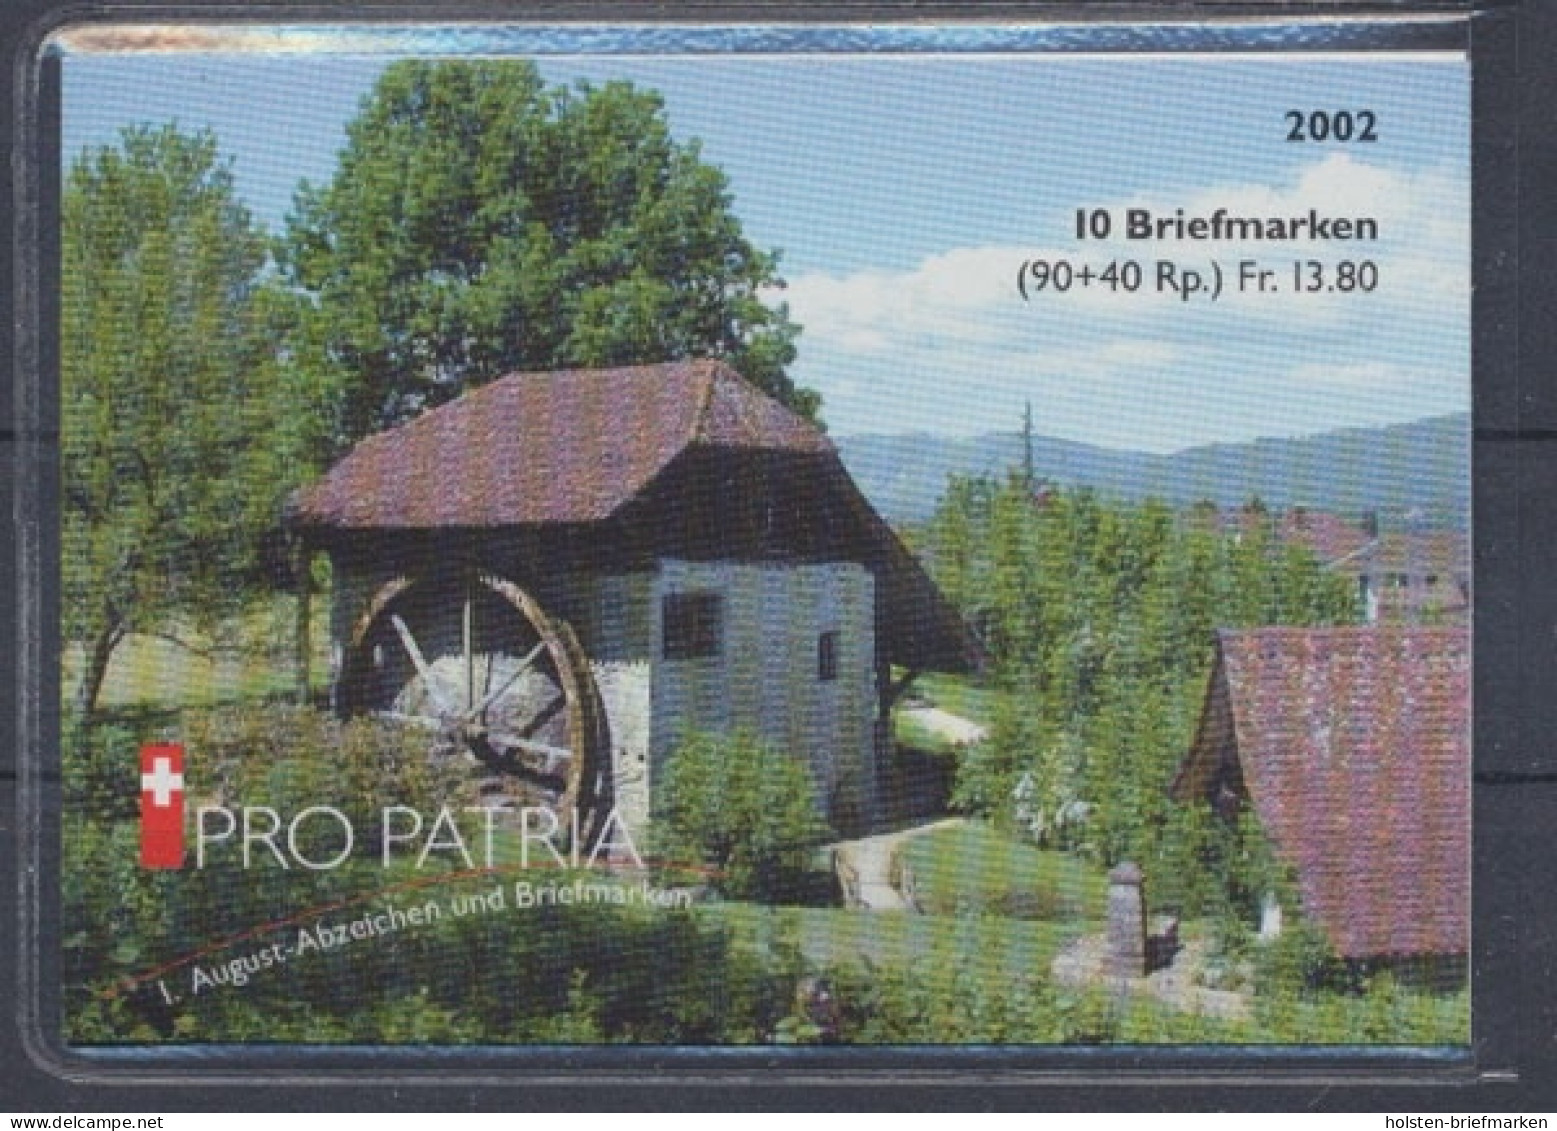 Schweiz, MiNr. MH 0-125, Postfrisch - Booklets